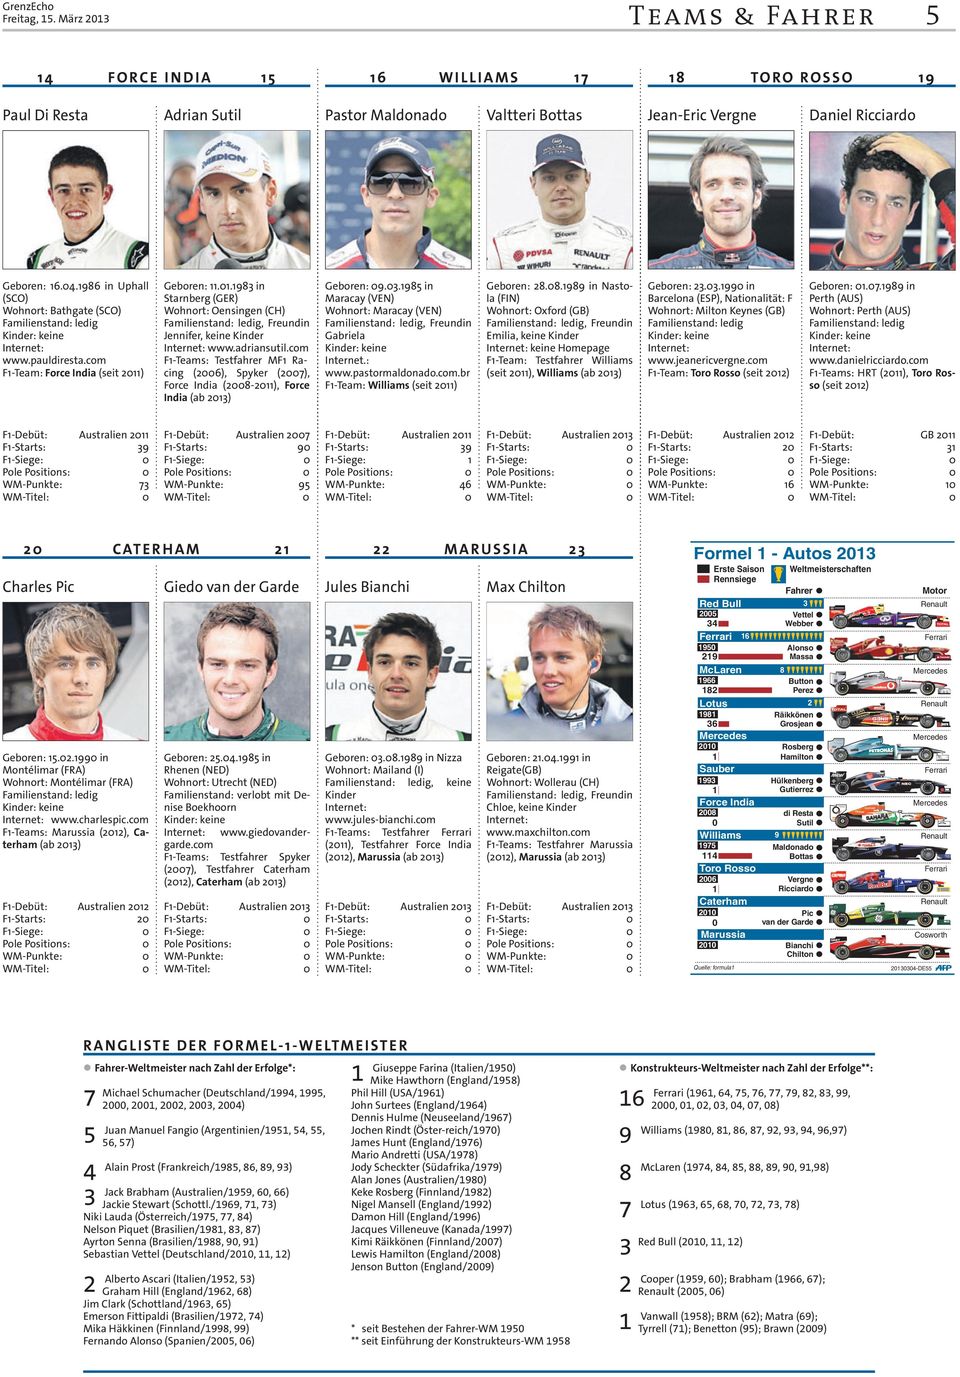 pauldiresta.com F-Team: Force India (seit 2) Geboren:..983 in Starnberg (GER) Wohnort: Oensingen (CH) Jennifer, keine Kinder www.adriansutil.